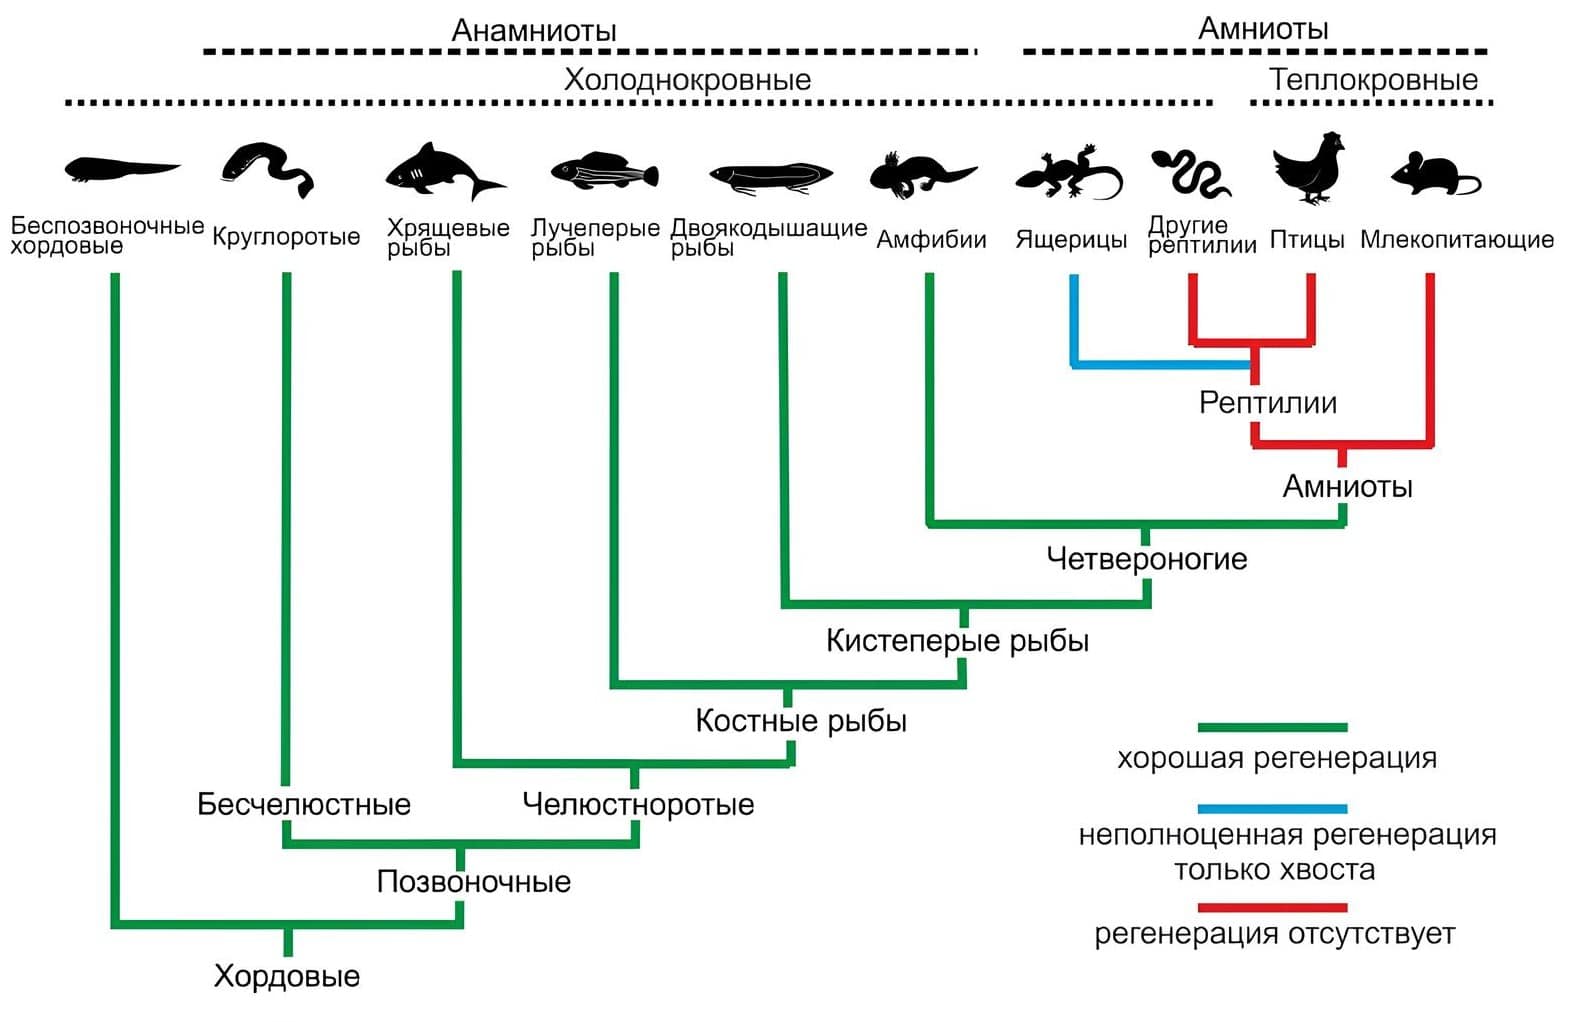 Эволюционное древо позвоночных и различия в их способности к регенерации / © Andrey G. Zaraisky et al., 2024, www.ibch.ru